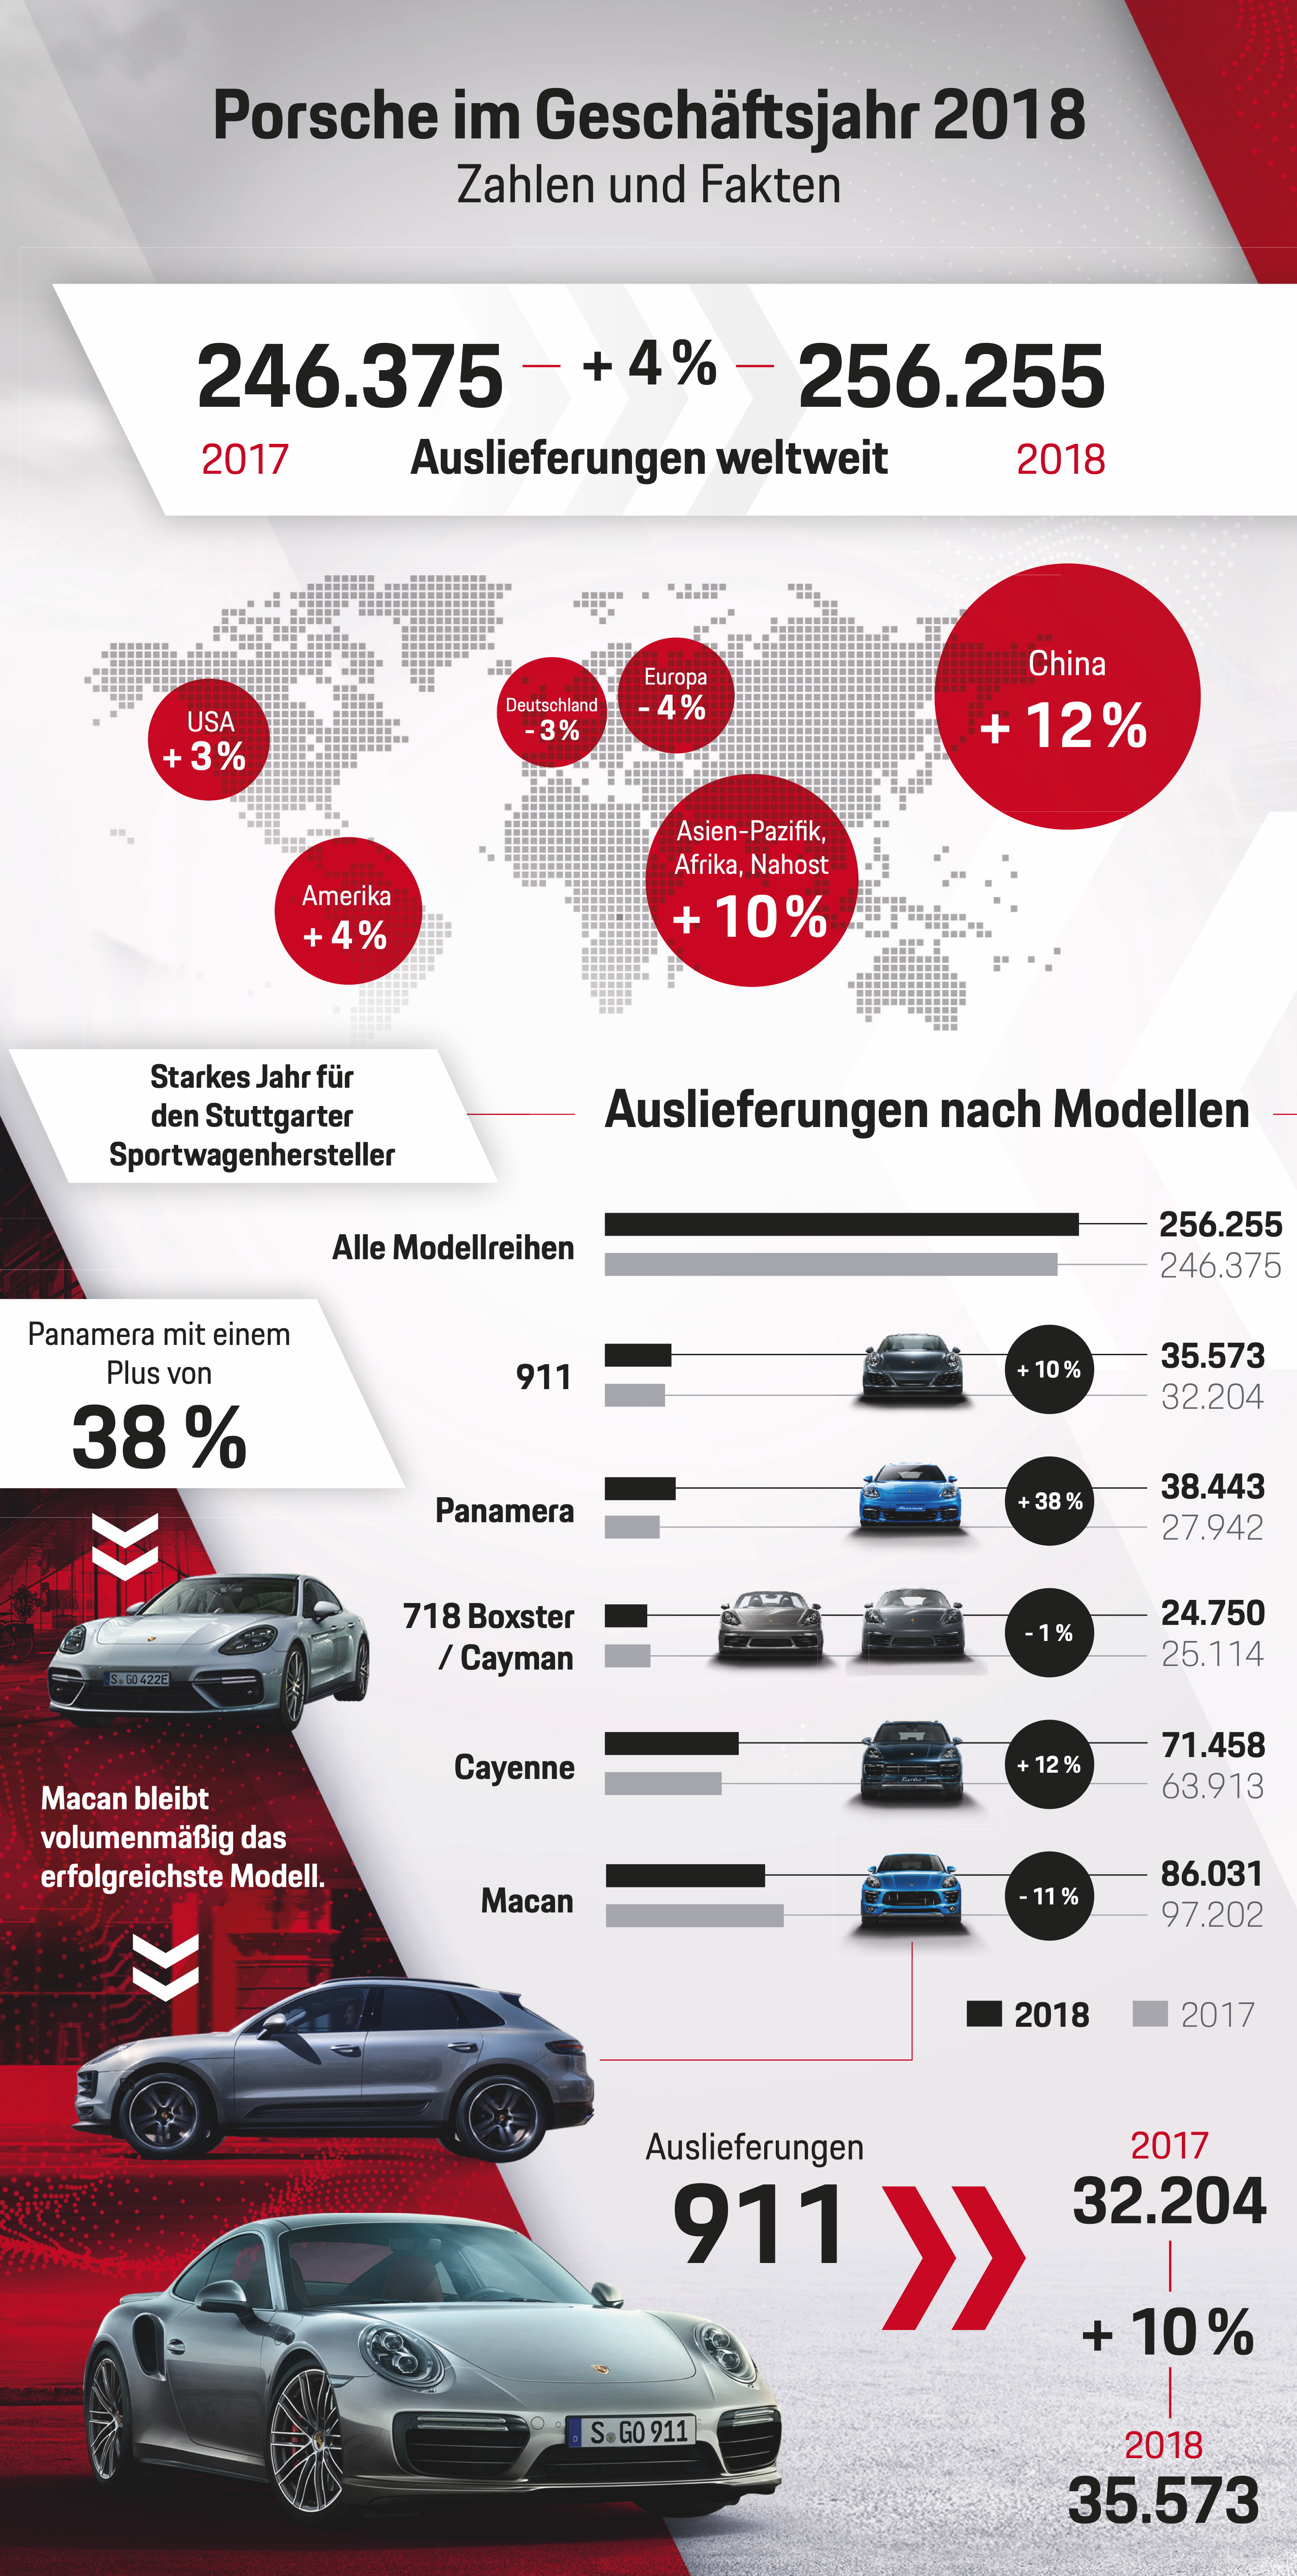 Auslieferungen Porsche im Geschäftsjahr 2018, Infografik, 2019, Porsche AG